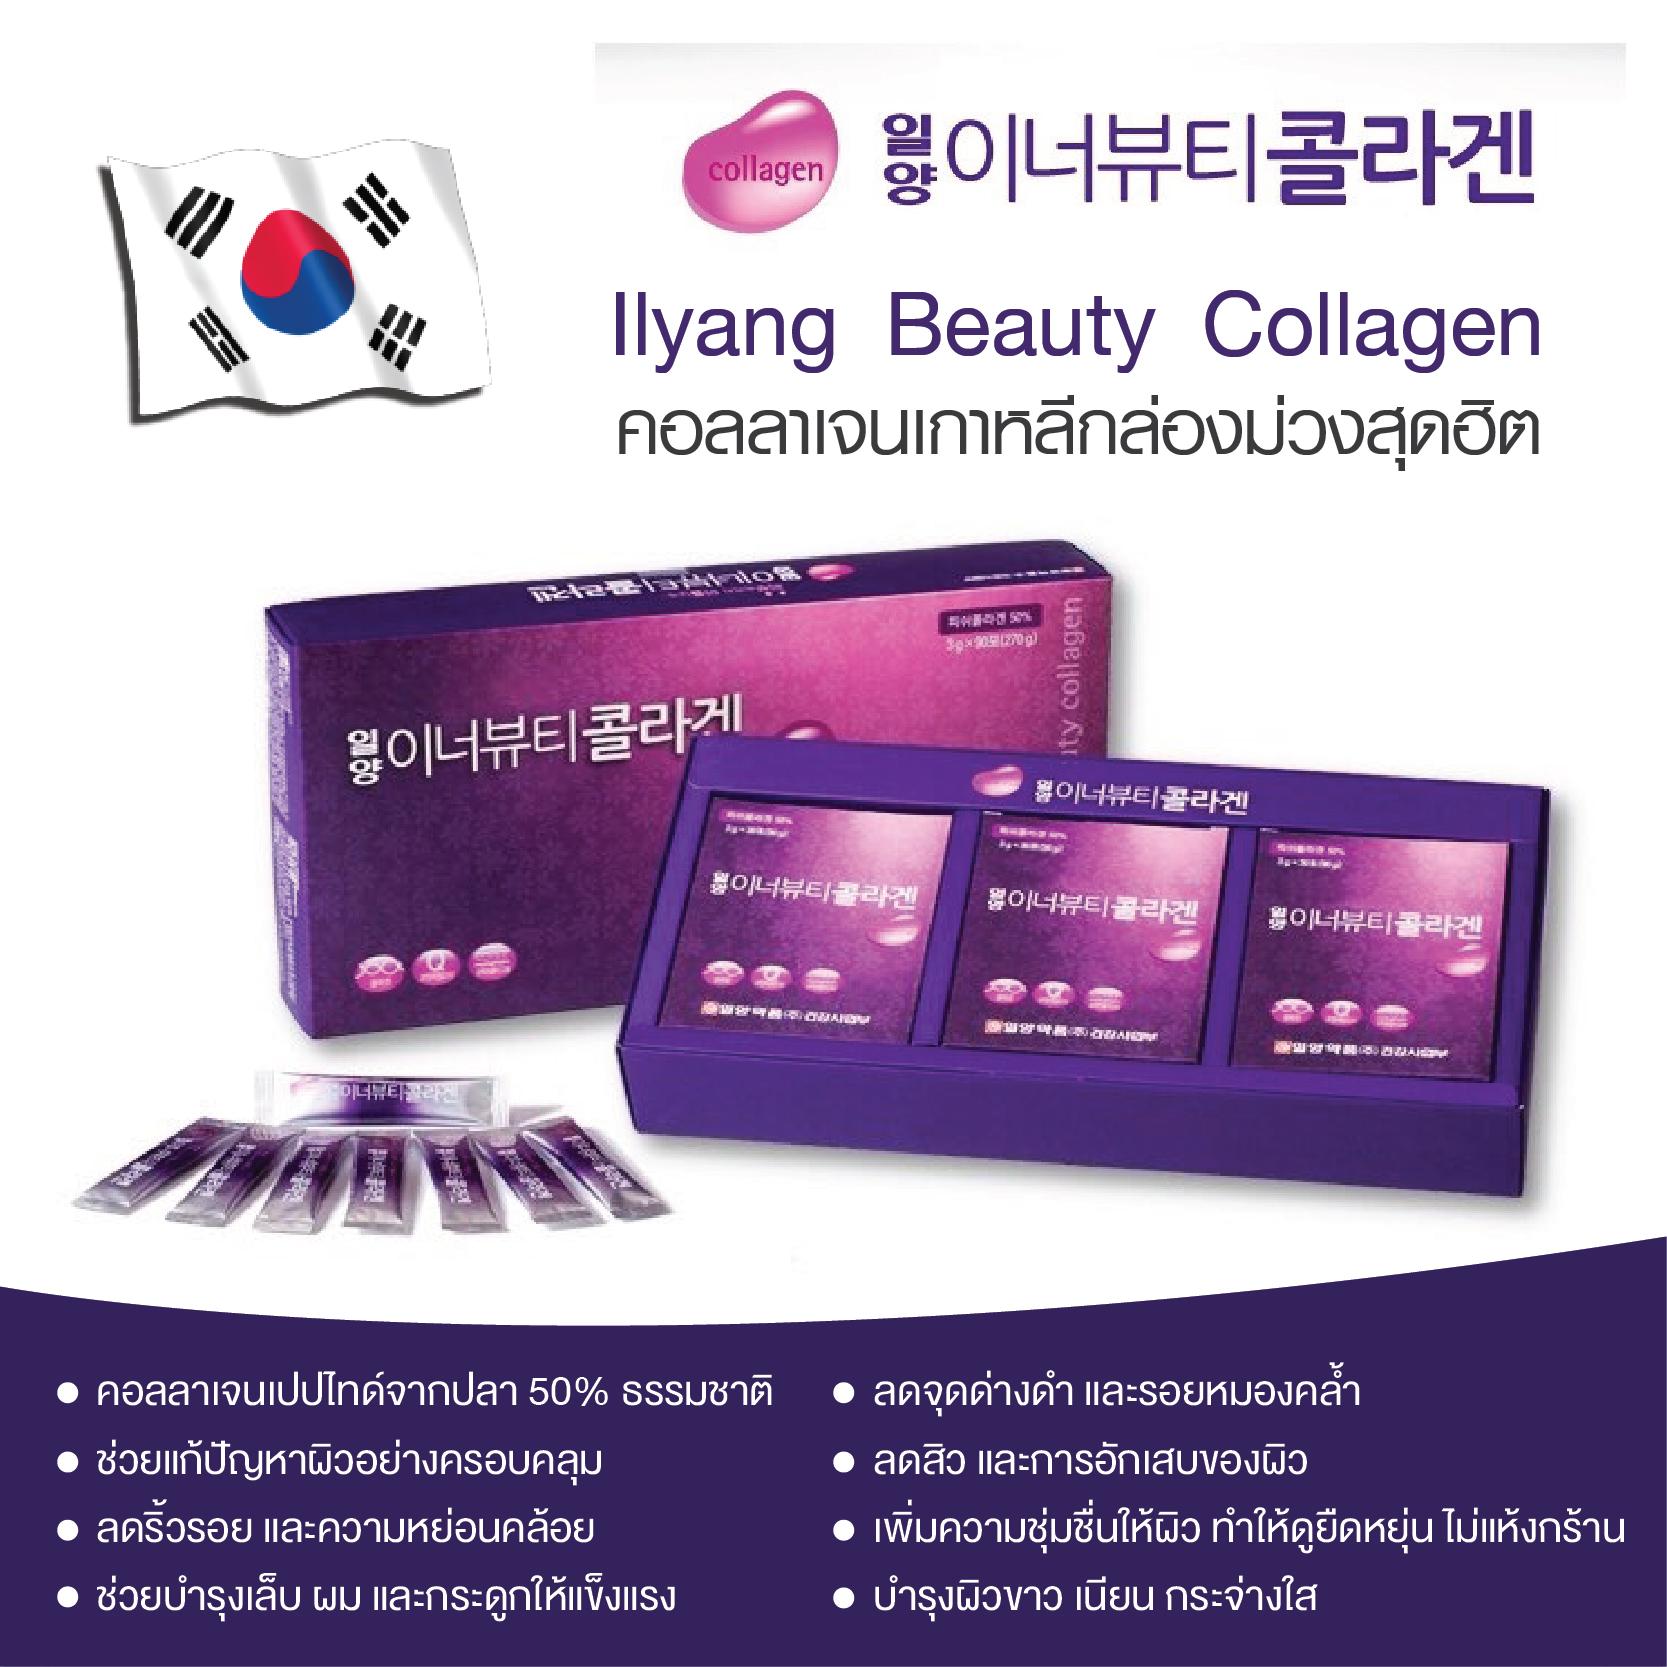 IL-Yang Beauty Collagen( 3g. x 30 ซอง) คอลลาเจนแท้ 100%จากเกาหลีกล่องม่วง